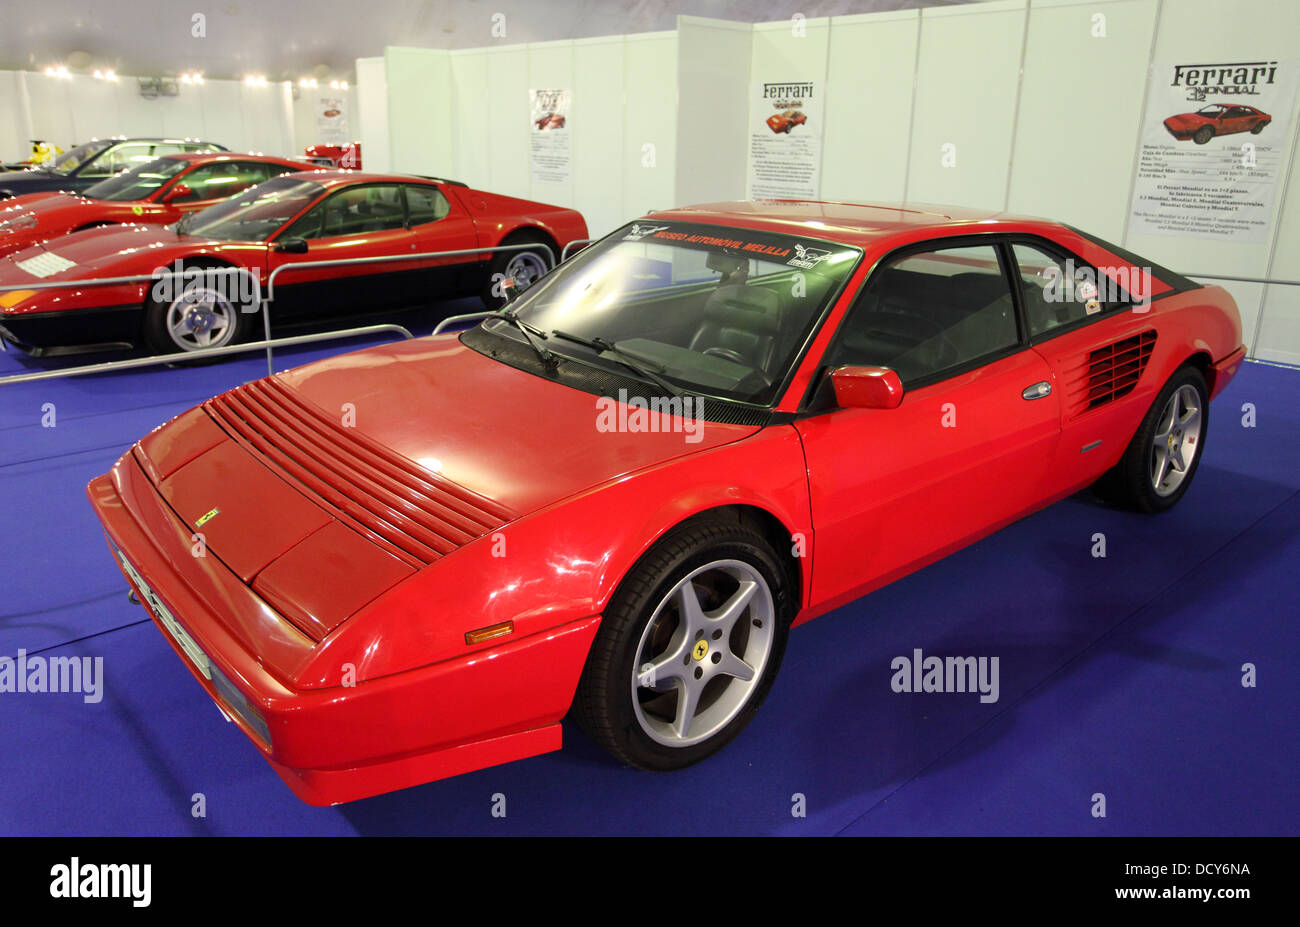 Ferrari Mondial 3.2 Stock Photo